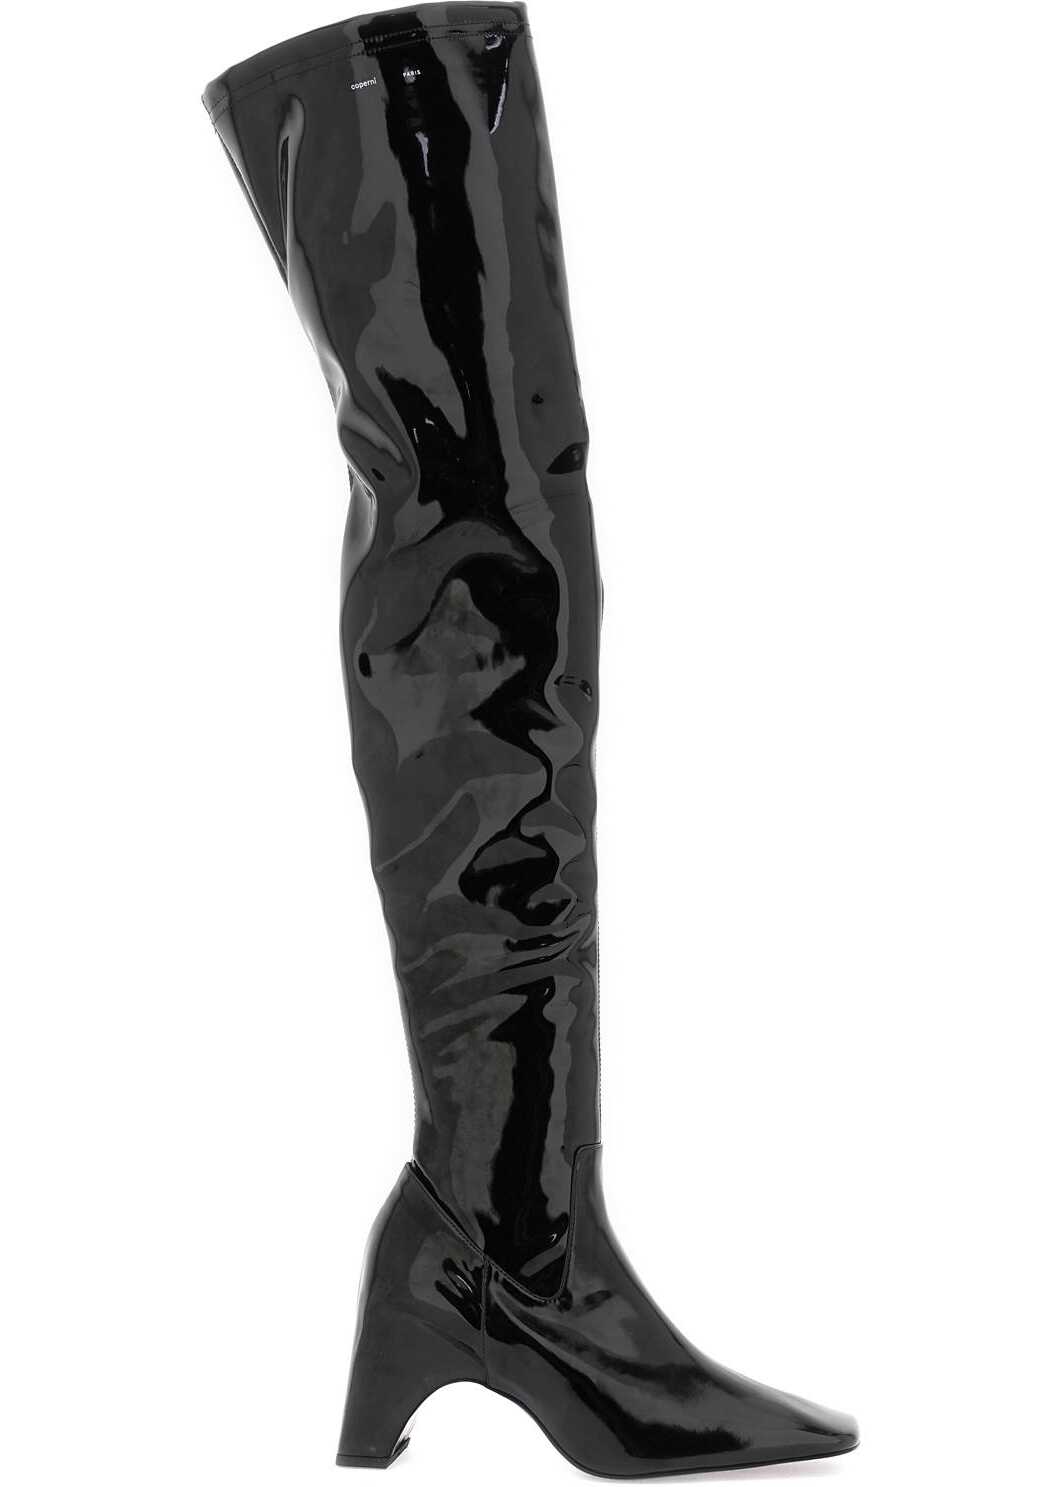 COPERNI Stretch Patent Faux Leather Cuissardes Boots BLACK